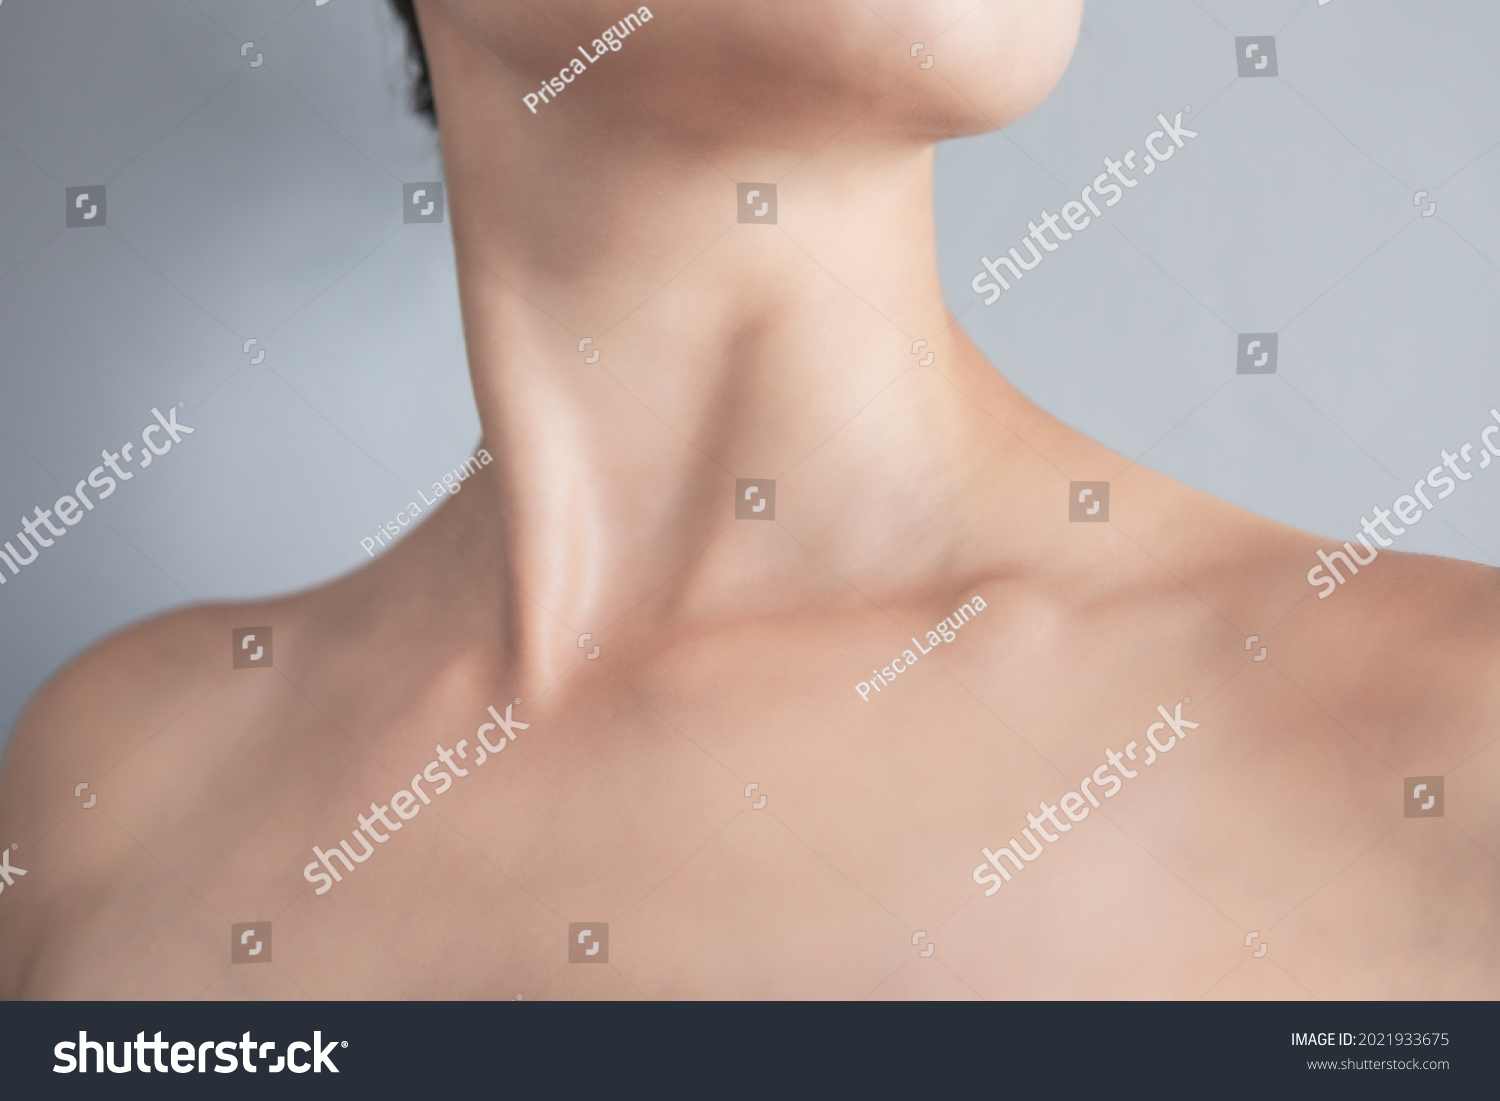 Увеличенные лимфоузлы шеи